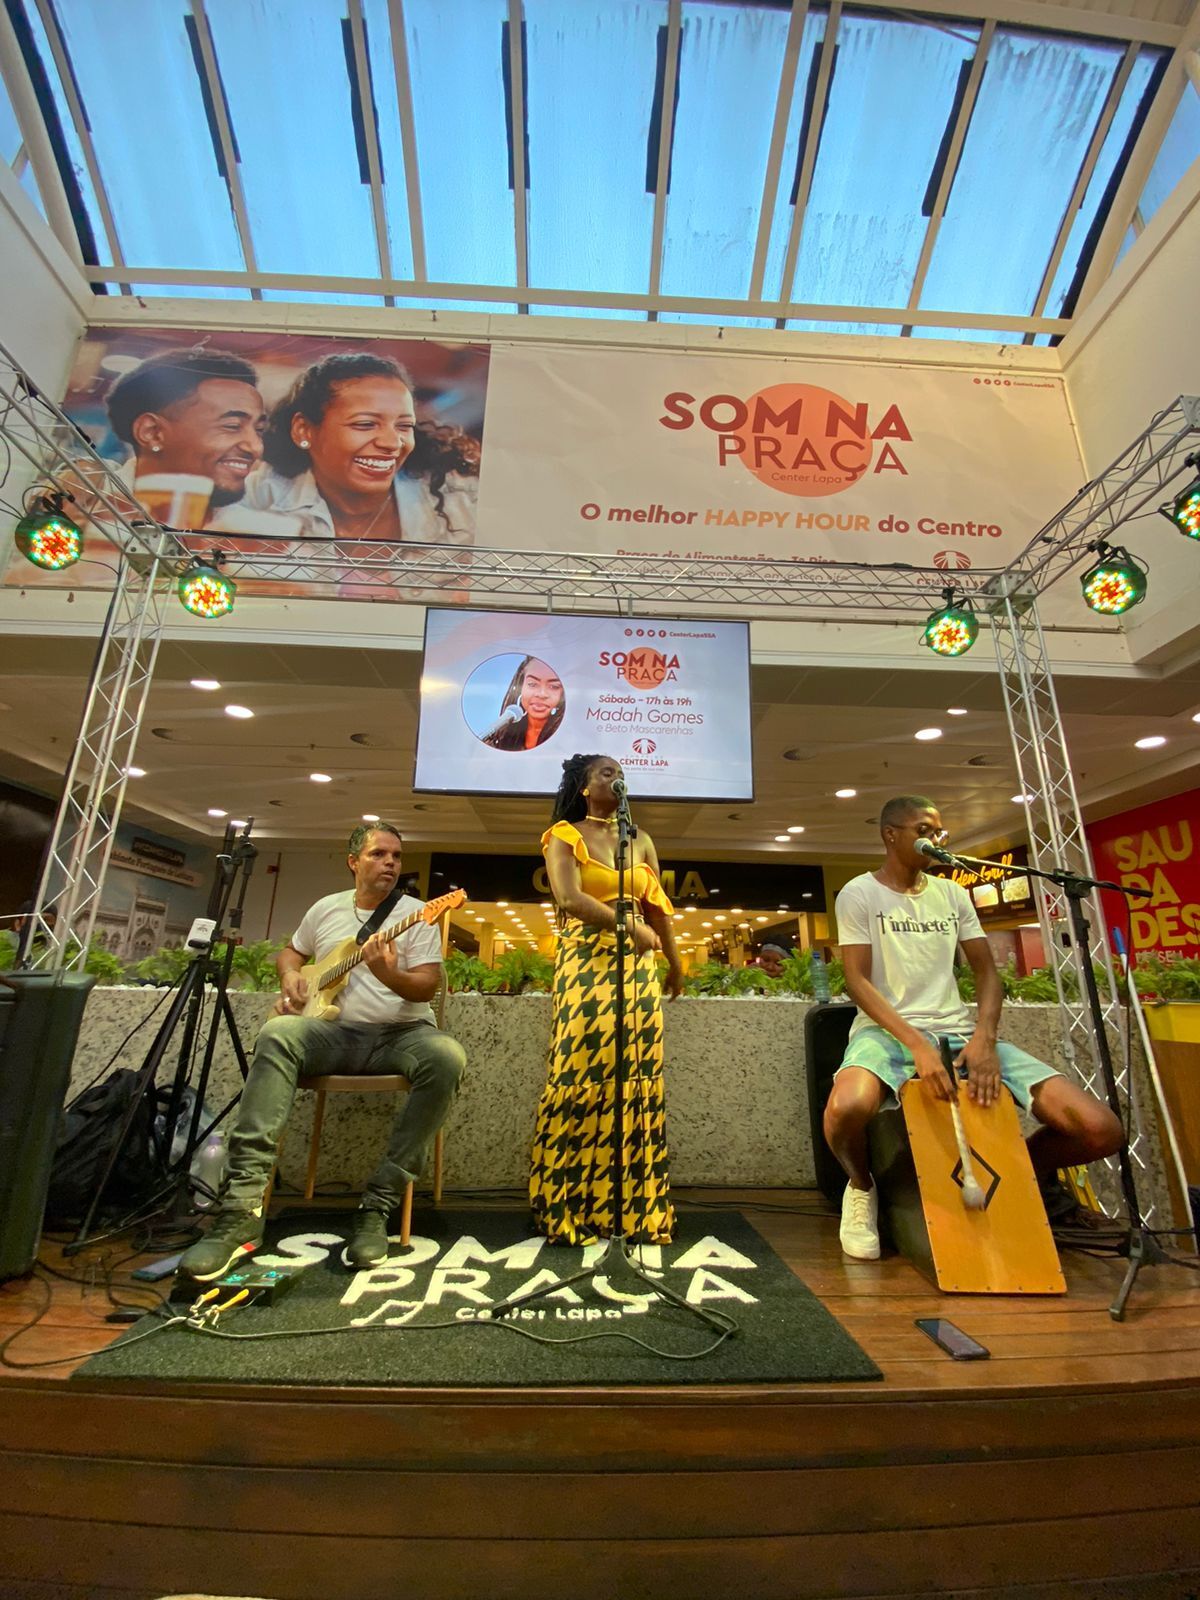 Seis cantoras baianas serão as vozes do projeto Som na Praça, em homenagem ao mês da mulher